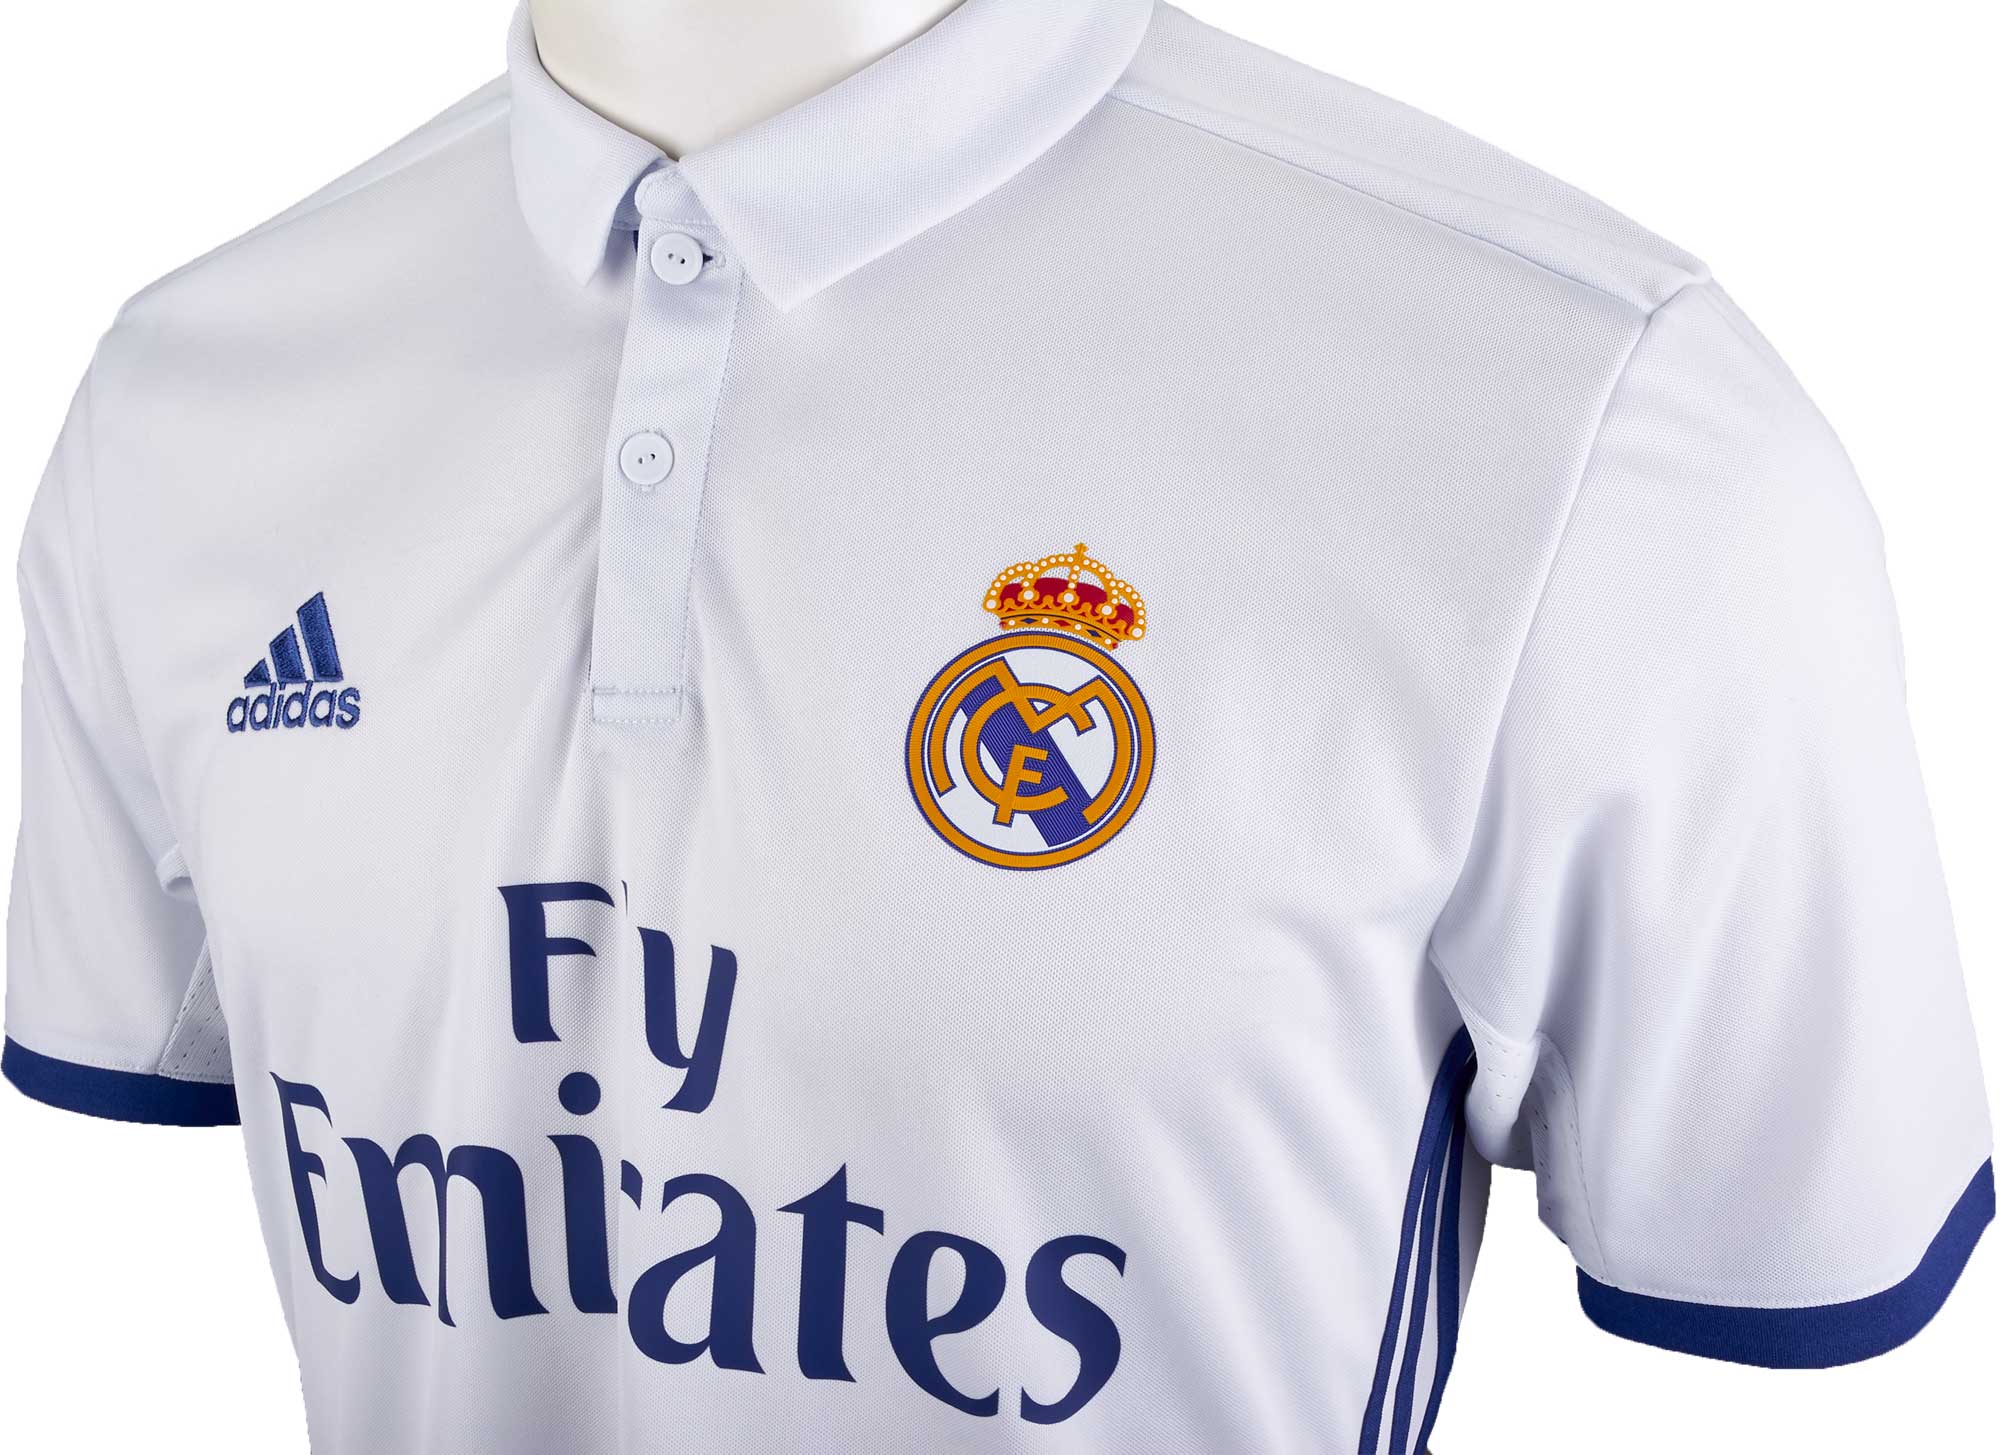 Real Madrid Jersey 2016 - China 2015-2016 New Season Real Madrid